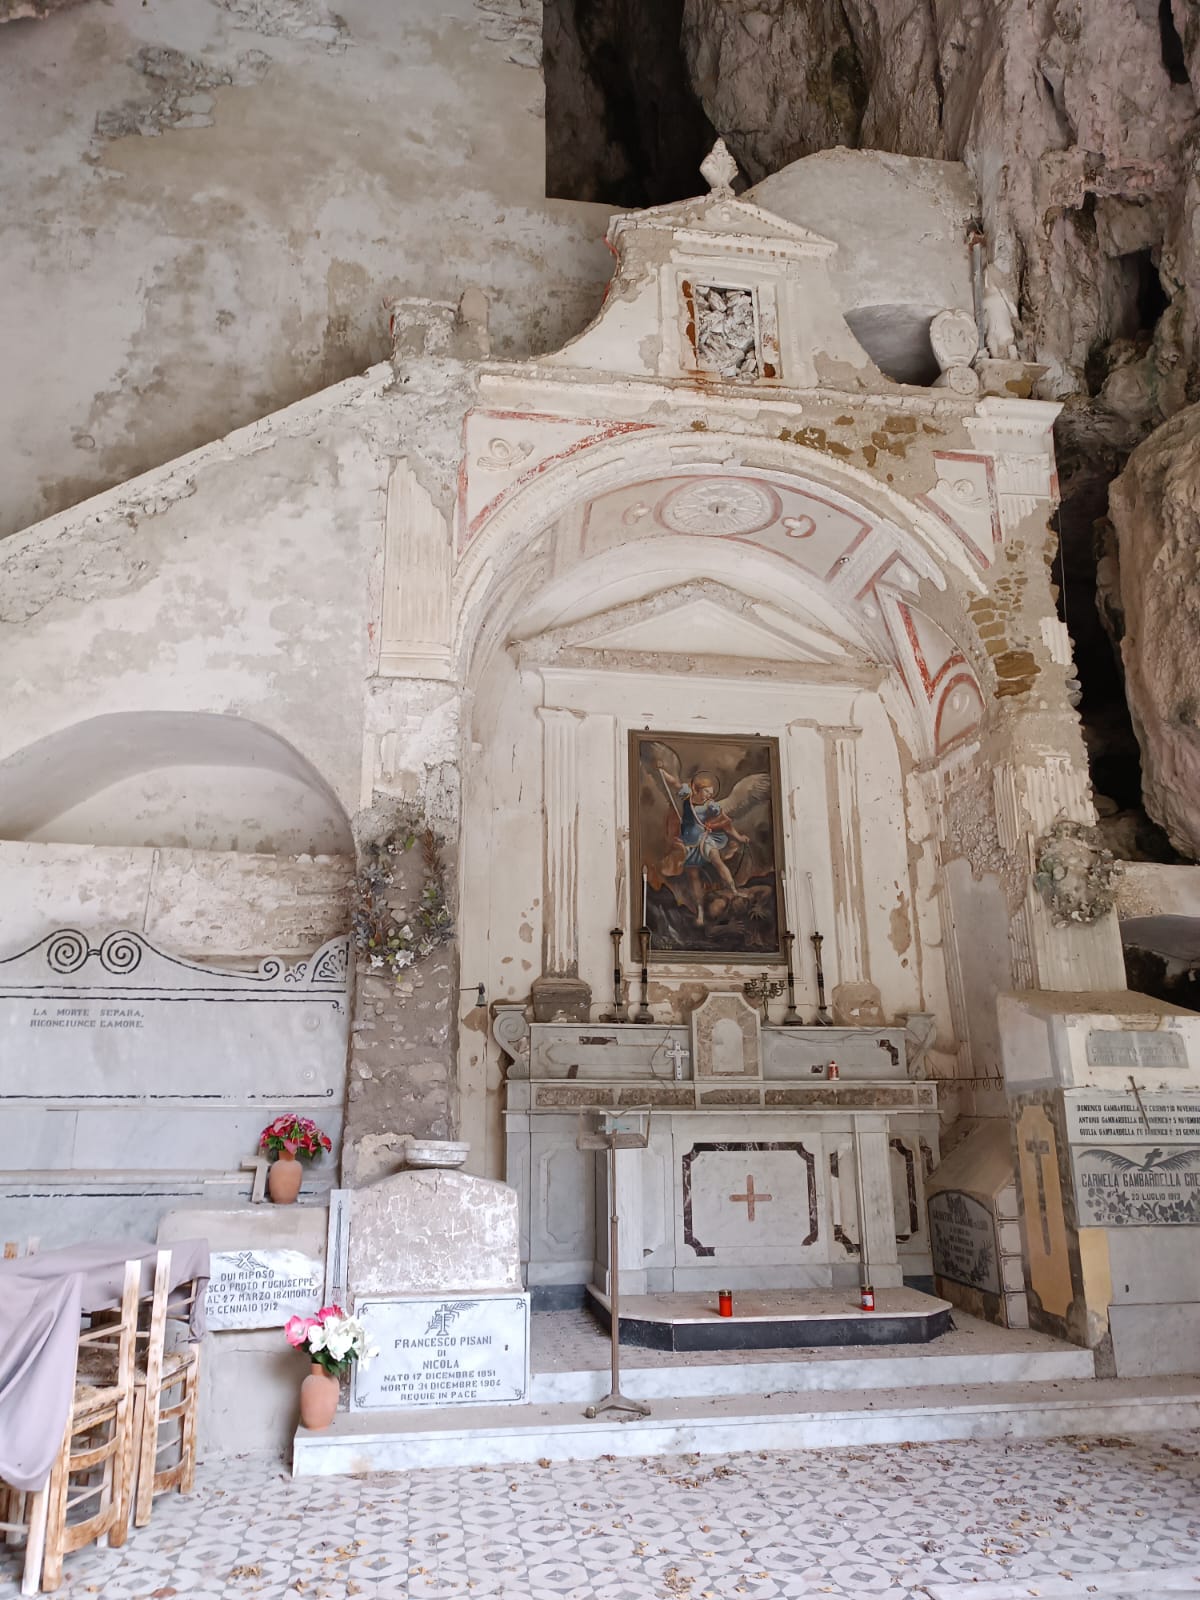 Atrani: recupero e valorizzazione chiesa rupestre di San Michele fuori le mura, progetto preliminare